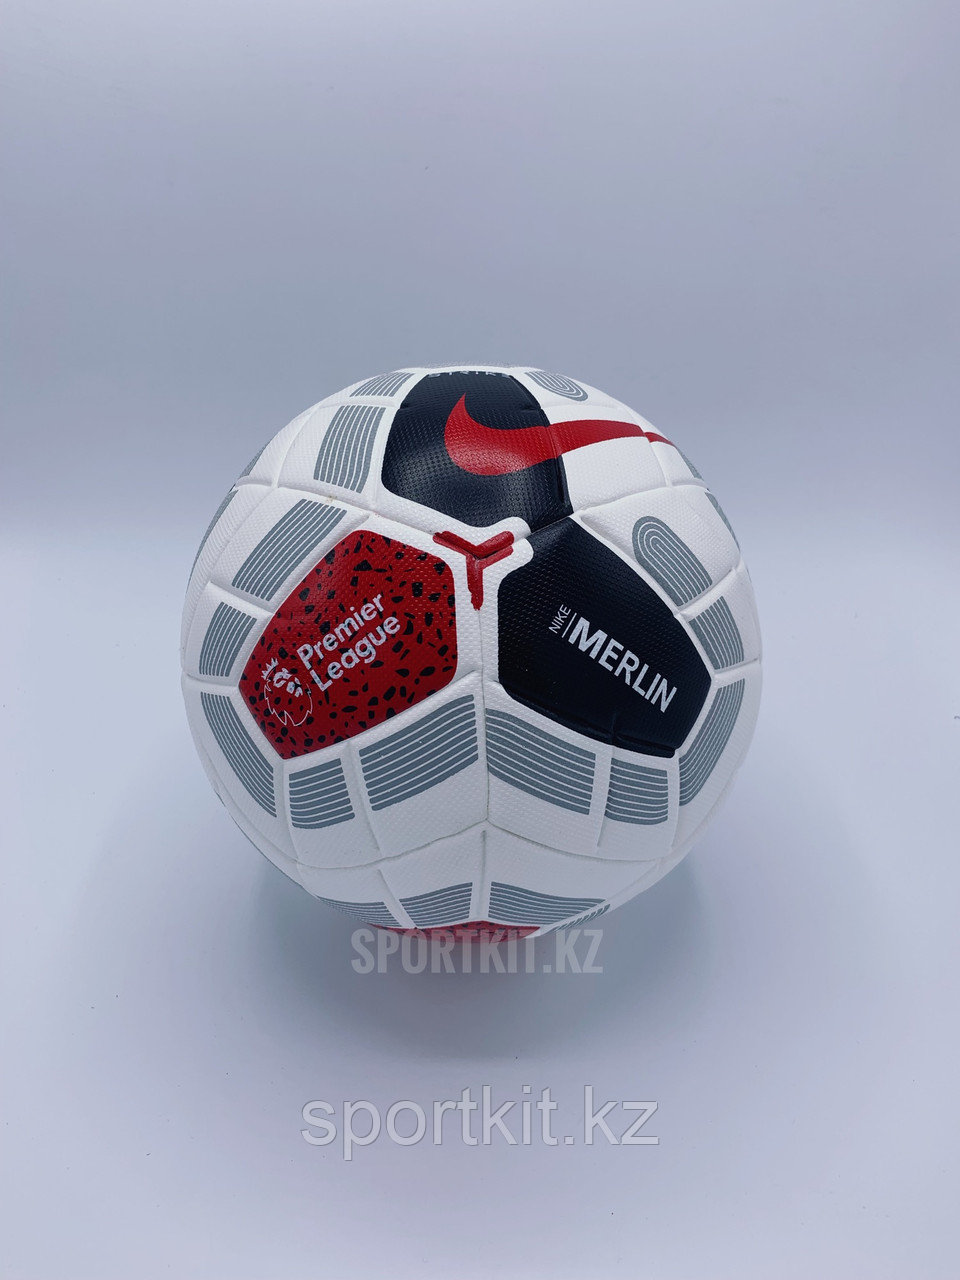 Футбольный мяч Премьер Лига Мерлин  с бесплатной доставкой